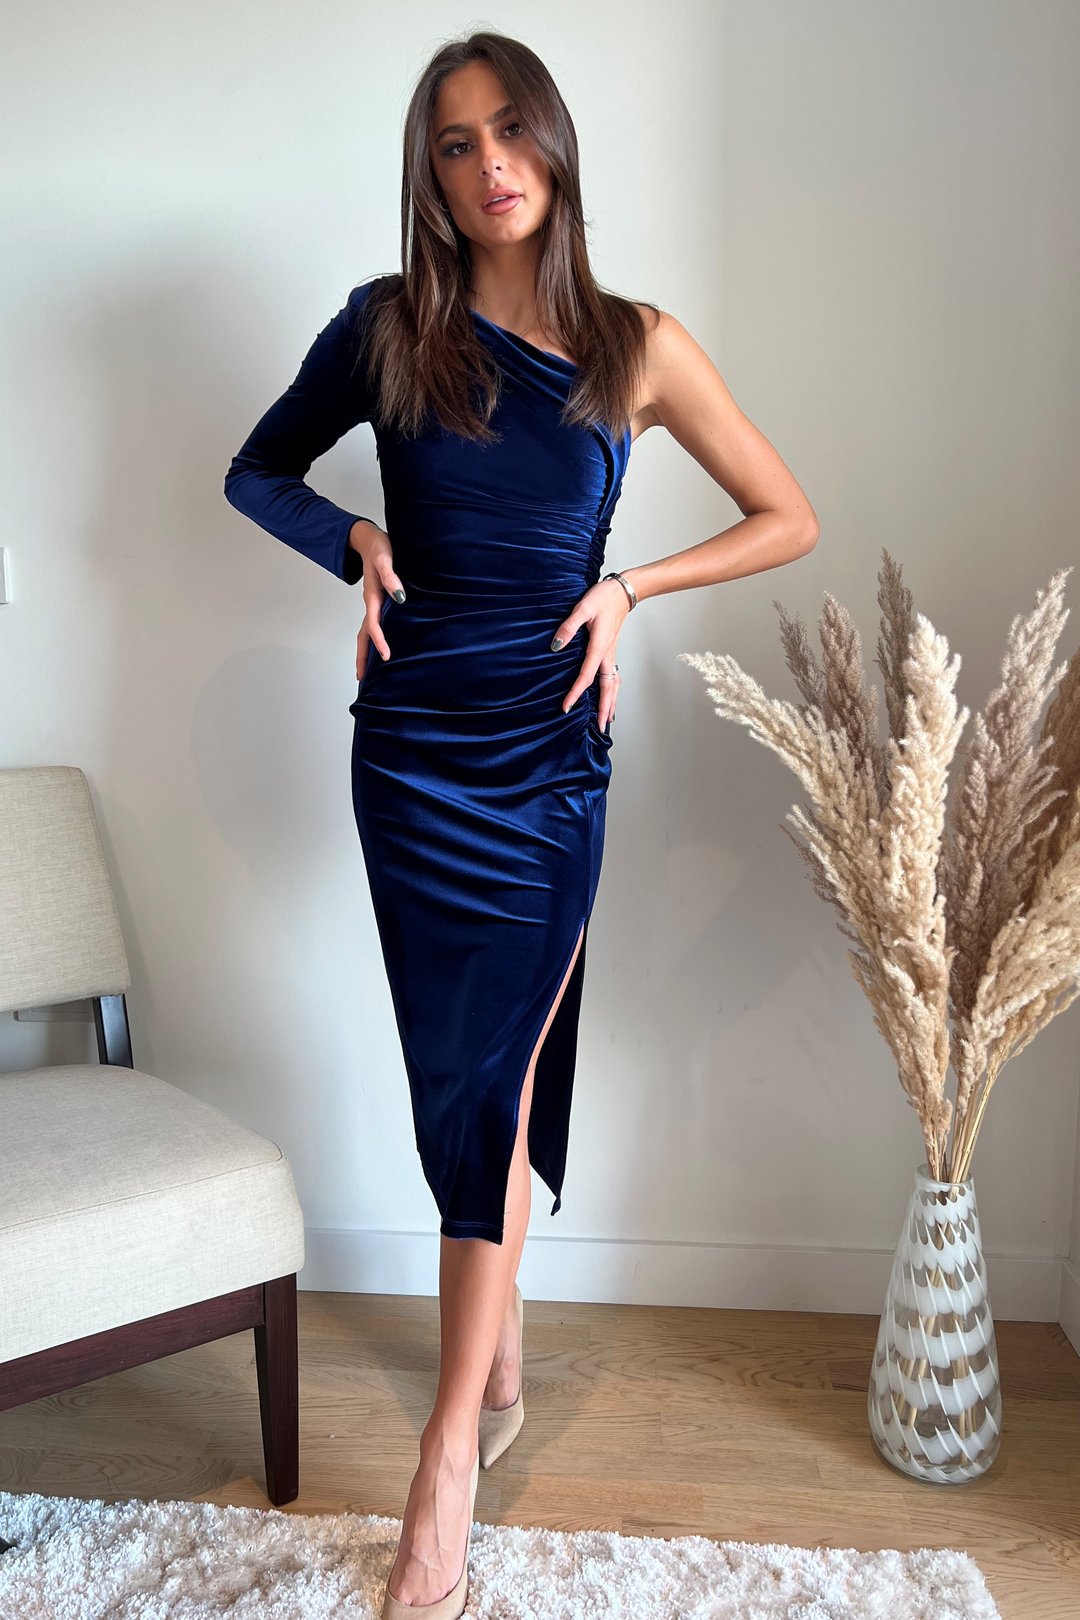 velvet blue dress new in uk post included sale